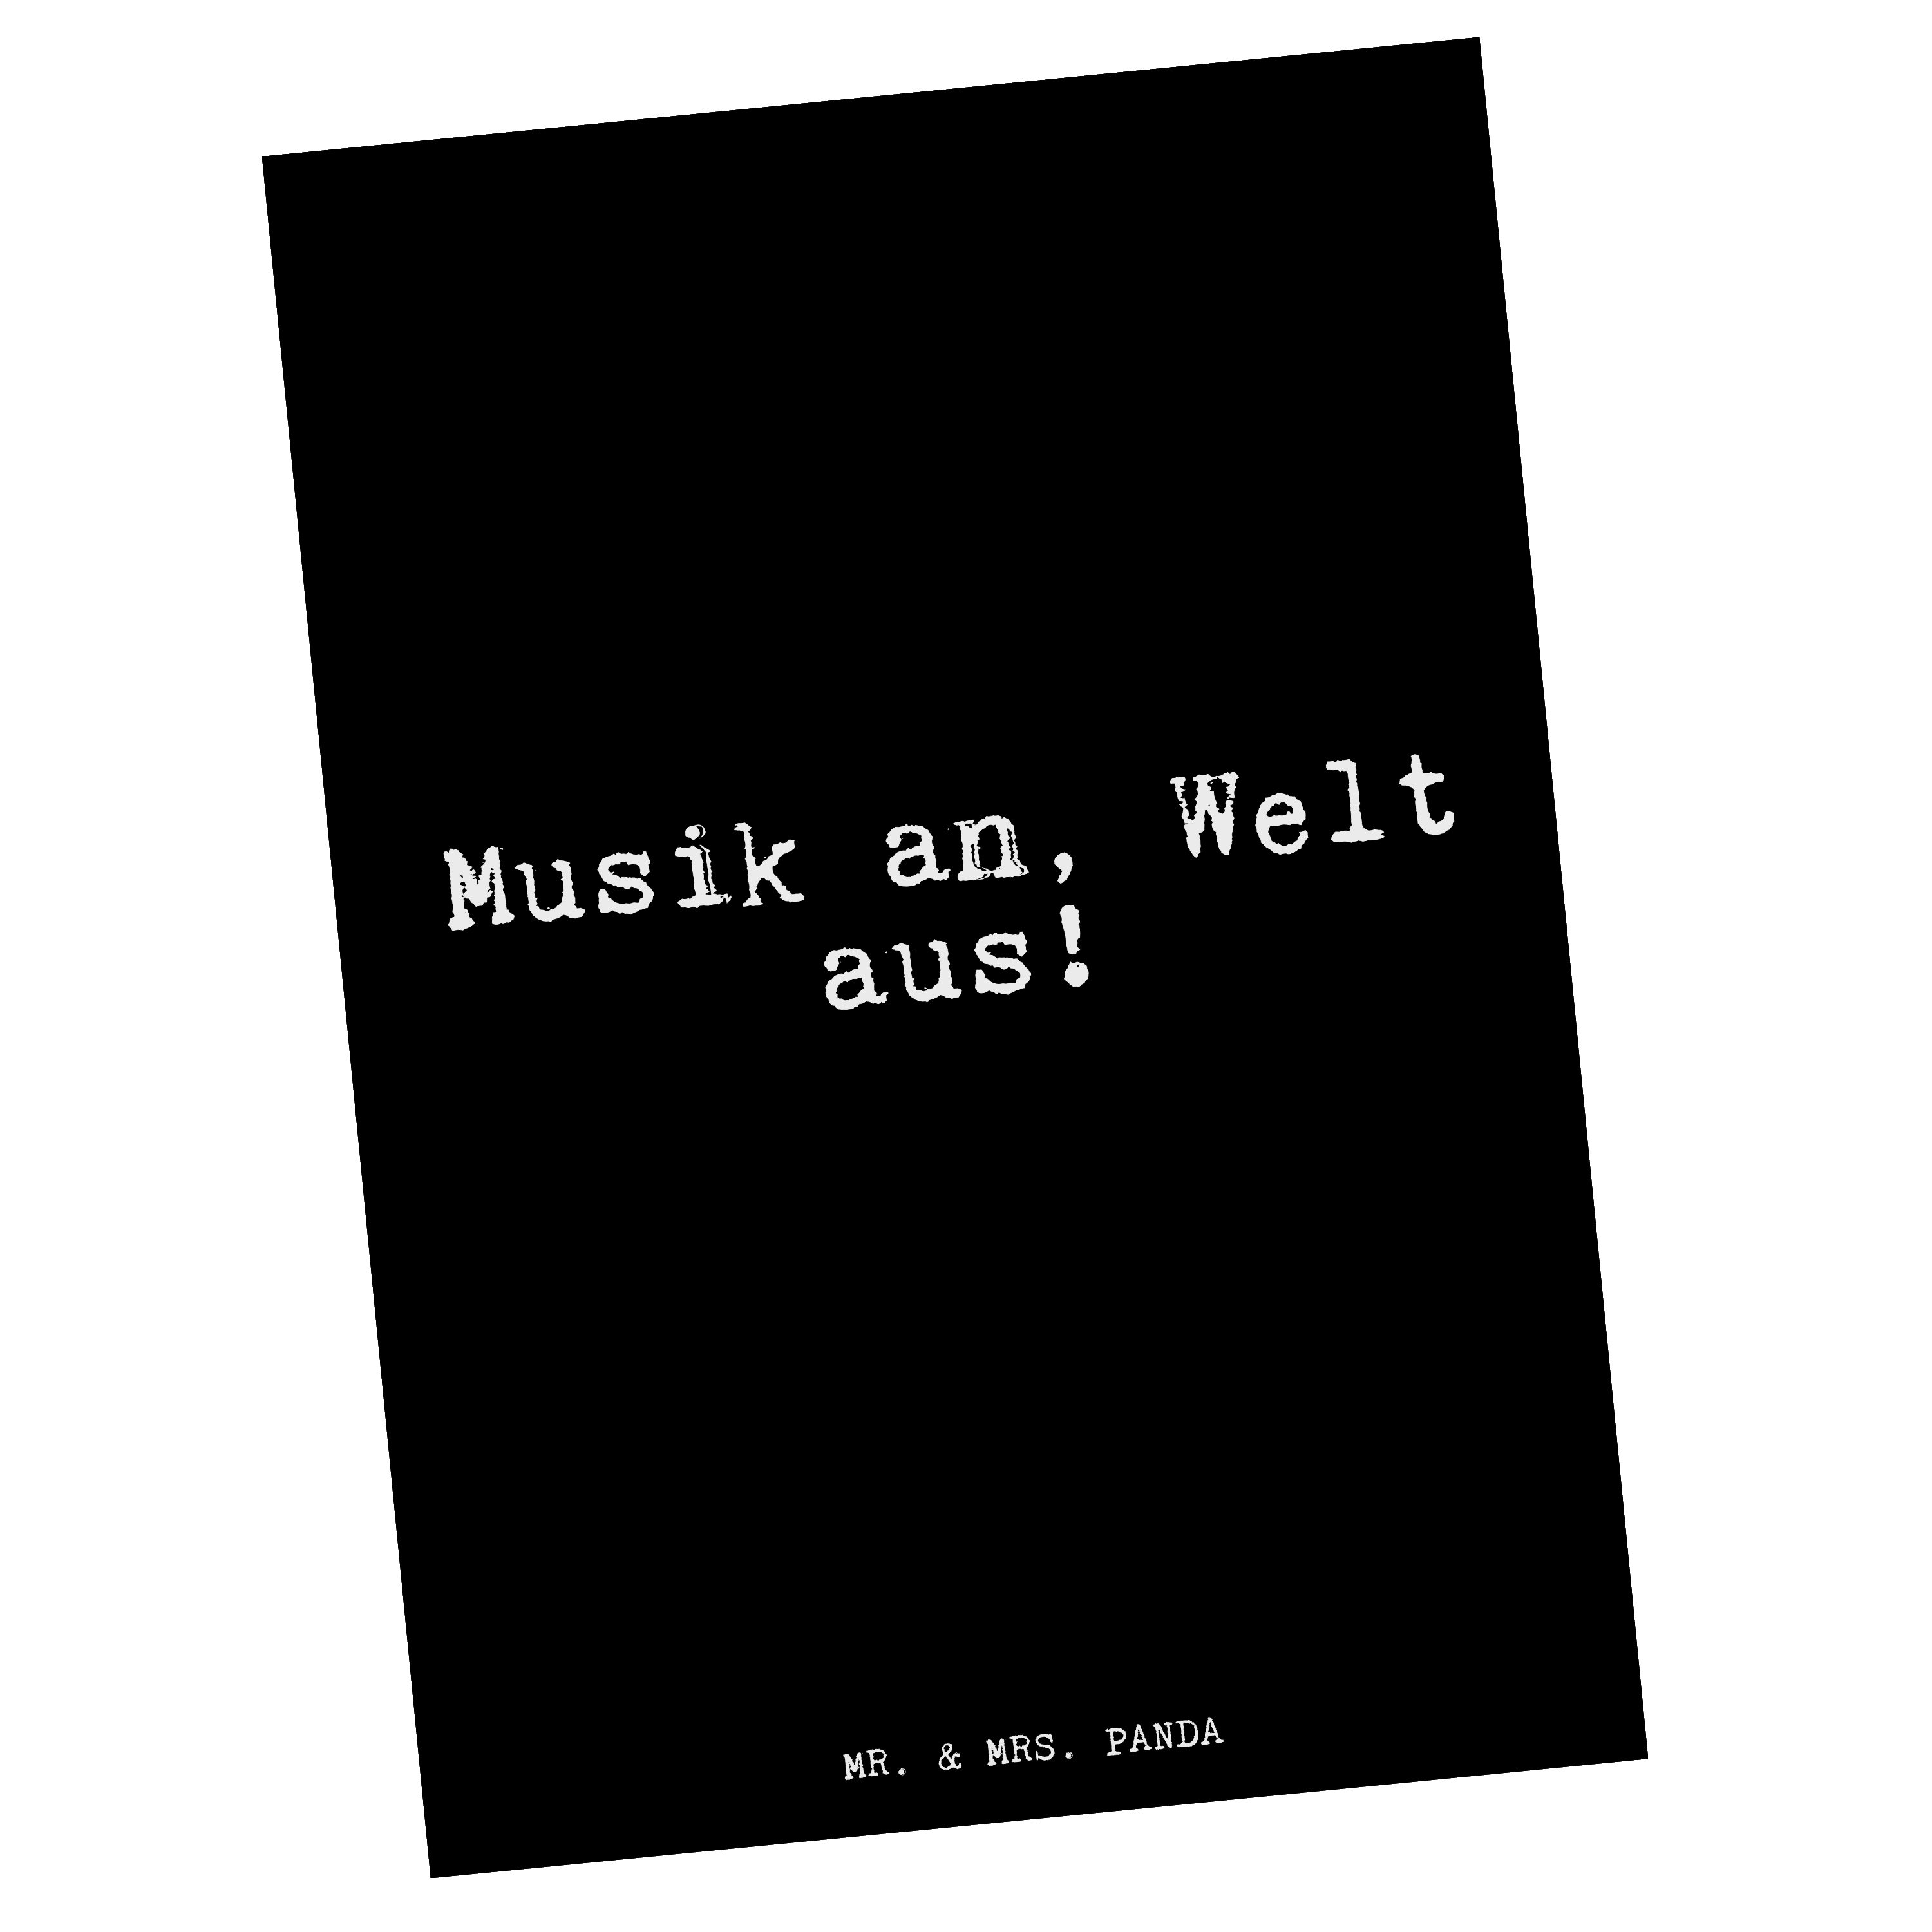 Mr. & Mrs. Panda Postkarte Musik an, Welt aus!... - Schwarz - Geschenk, Song, Karte, Geburtstags